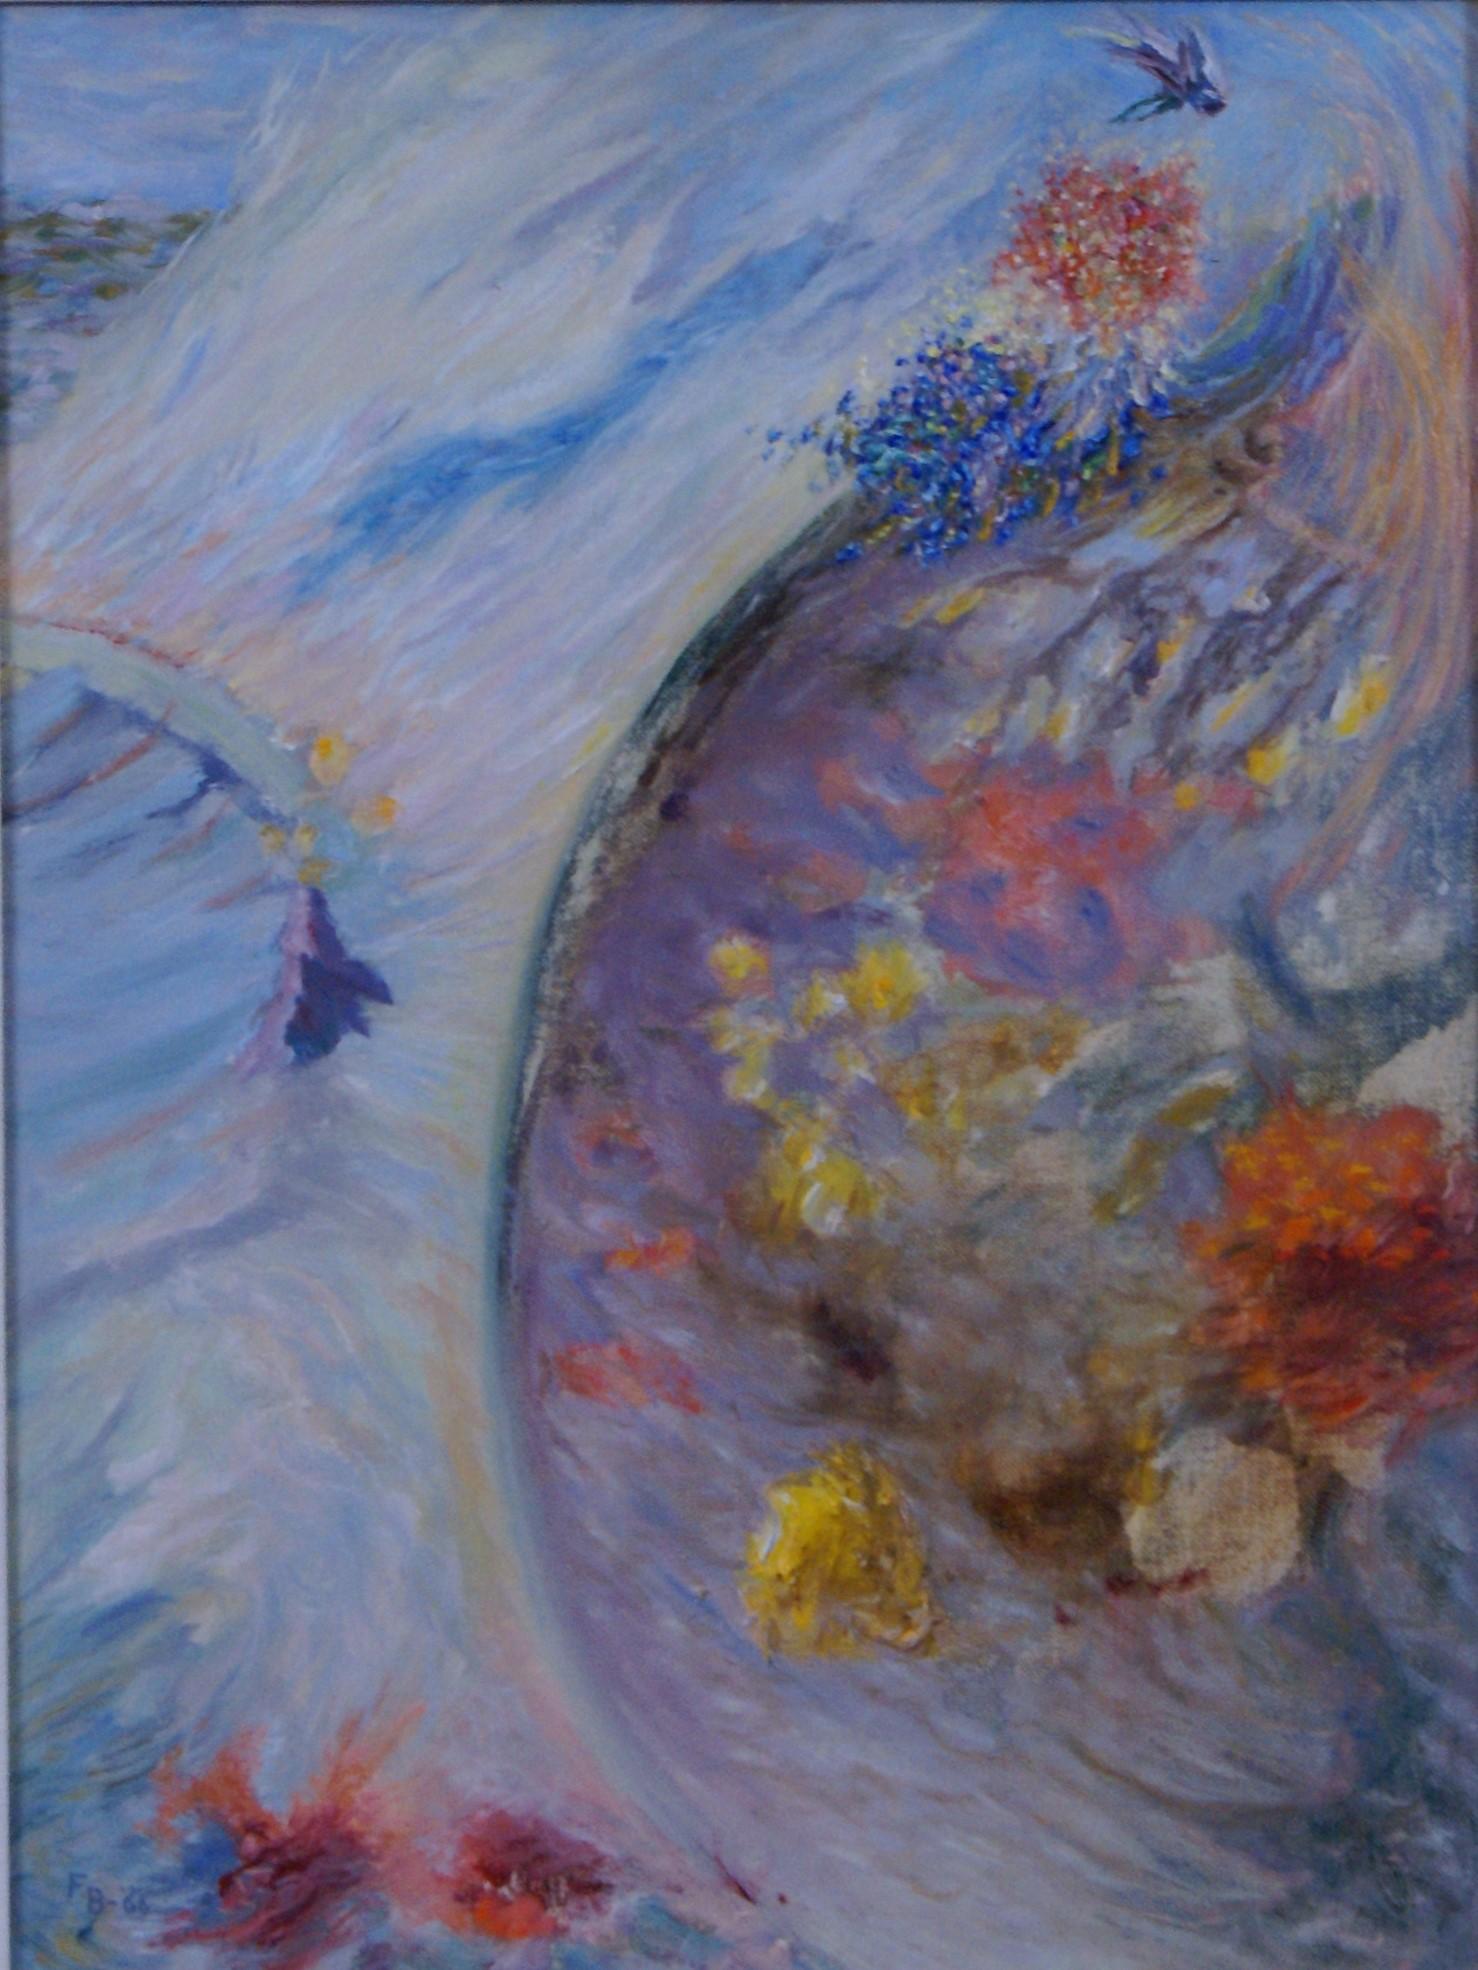 {Sea and Flowers} - Painting by Freeman Baldridge